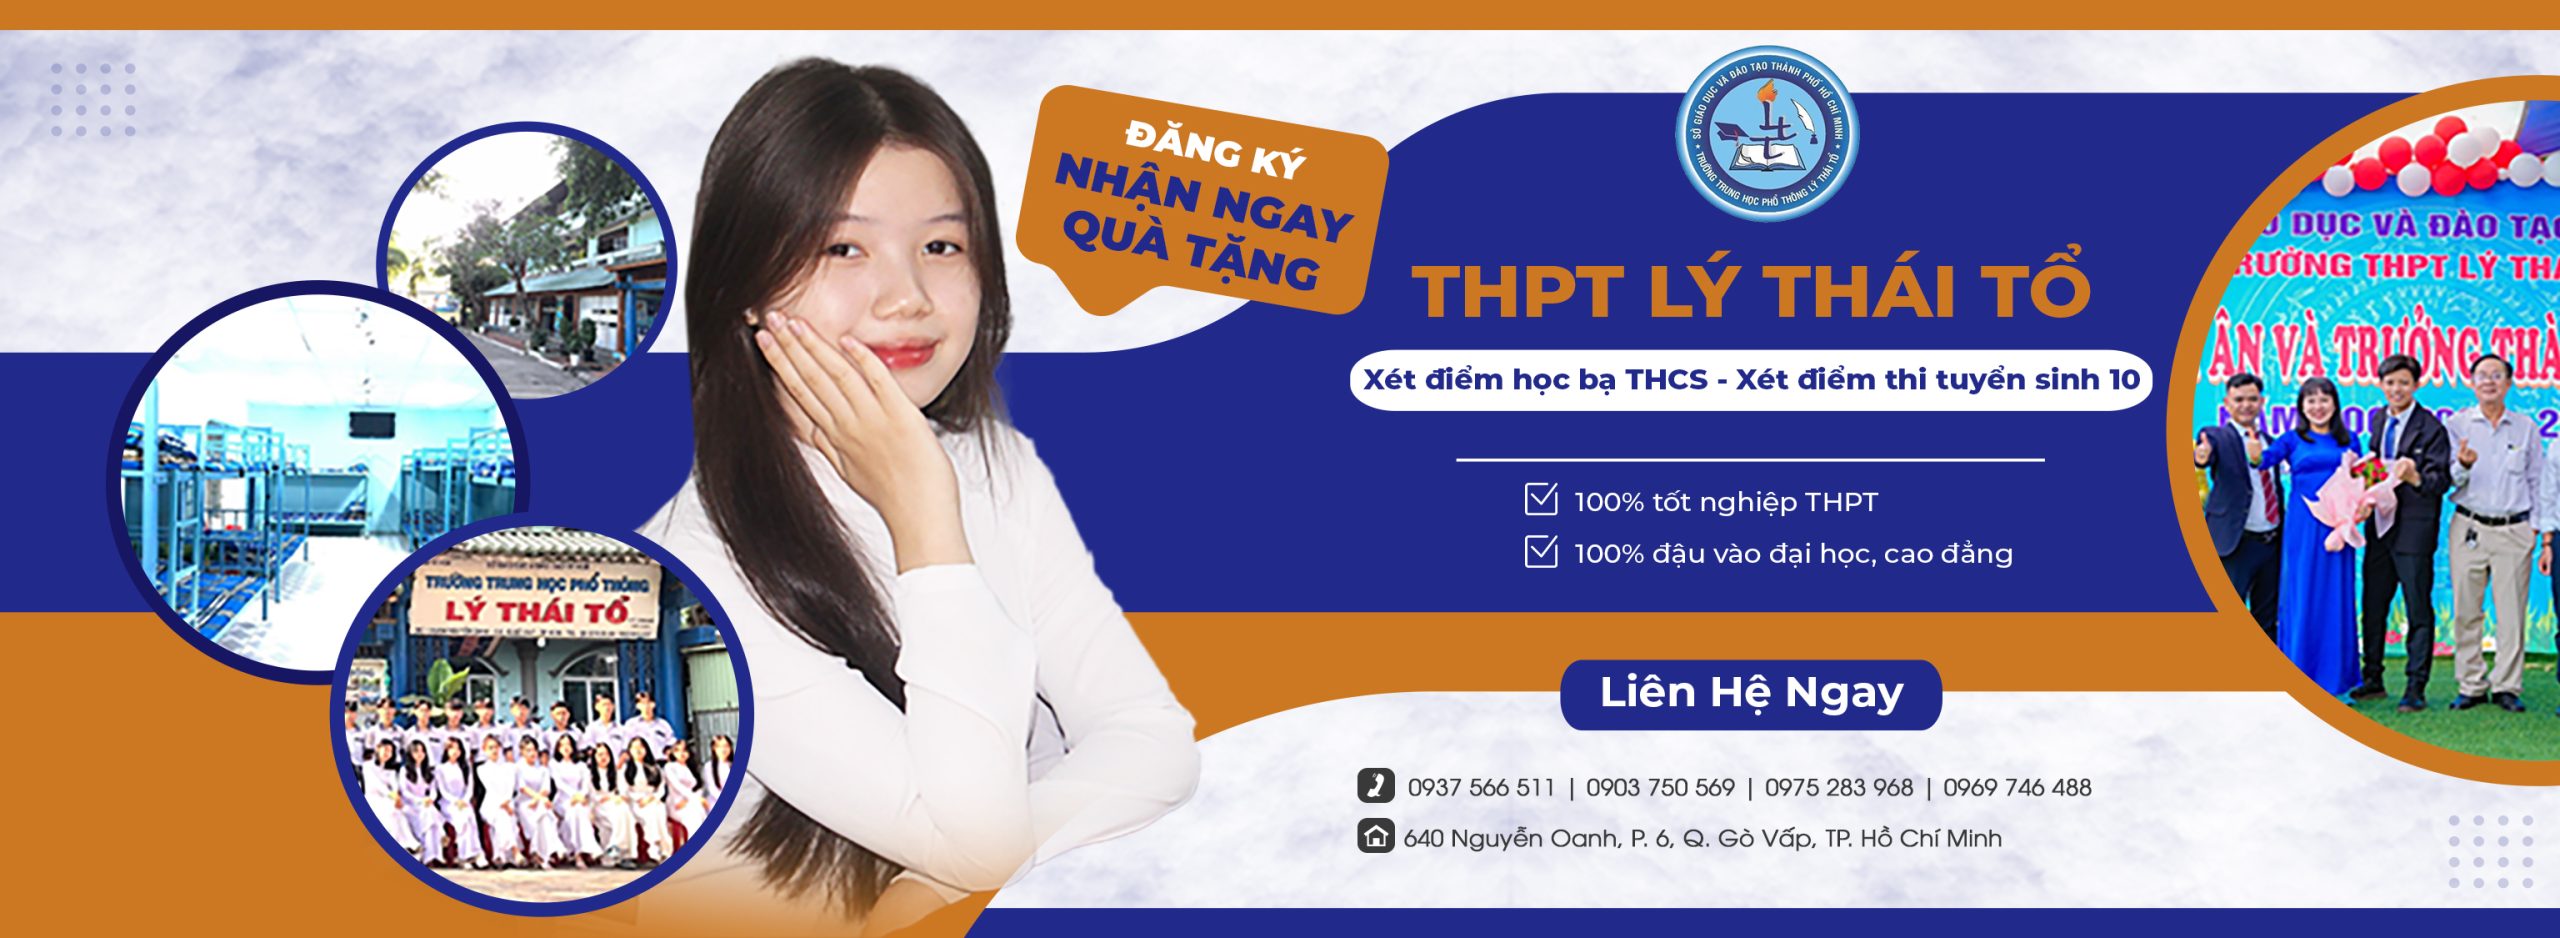 Chương trình tuyển sinh THPT Lý Thái Tổ